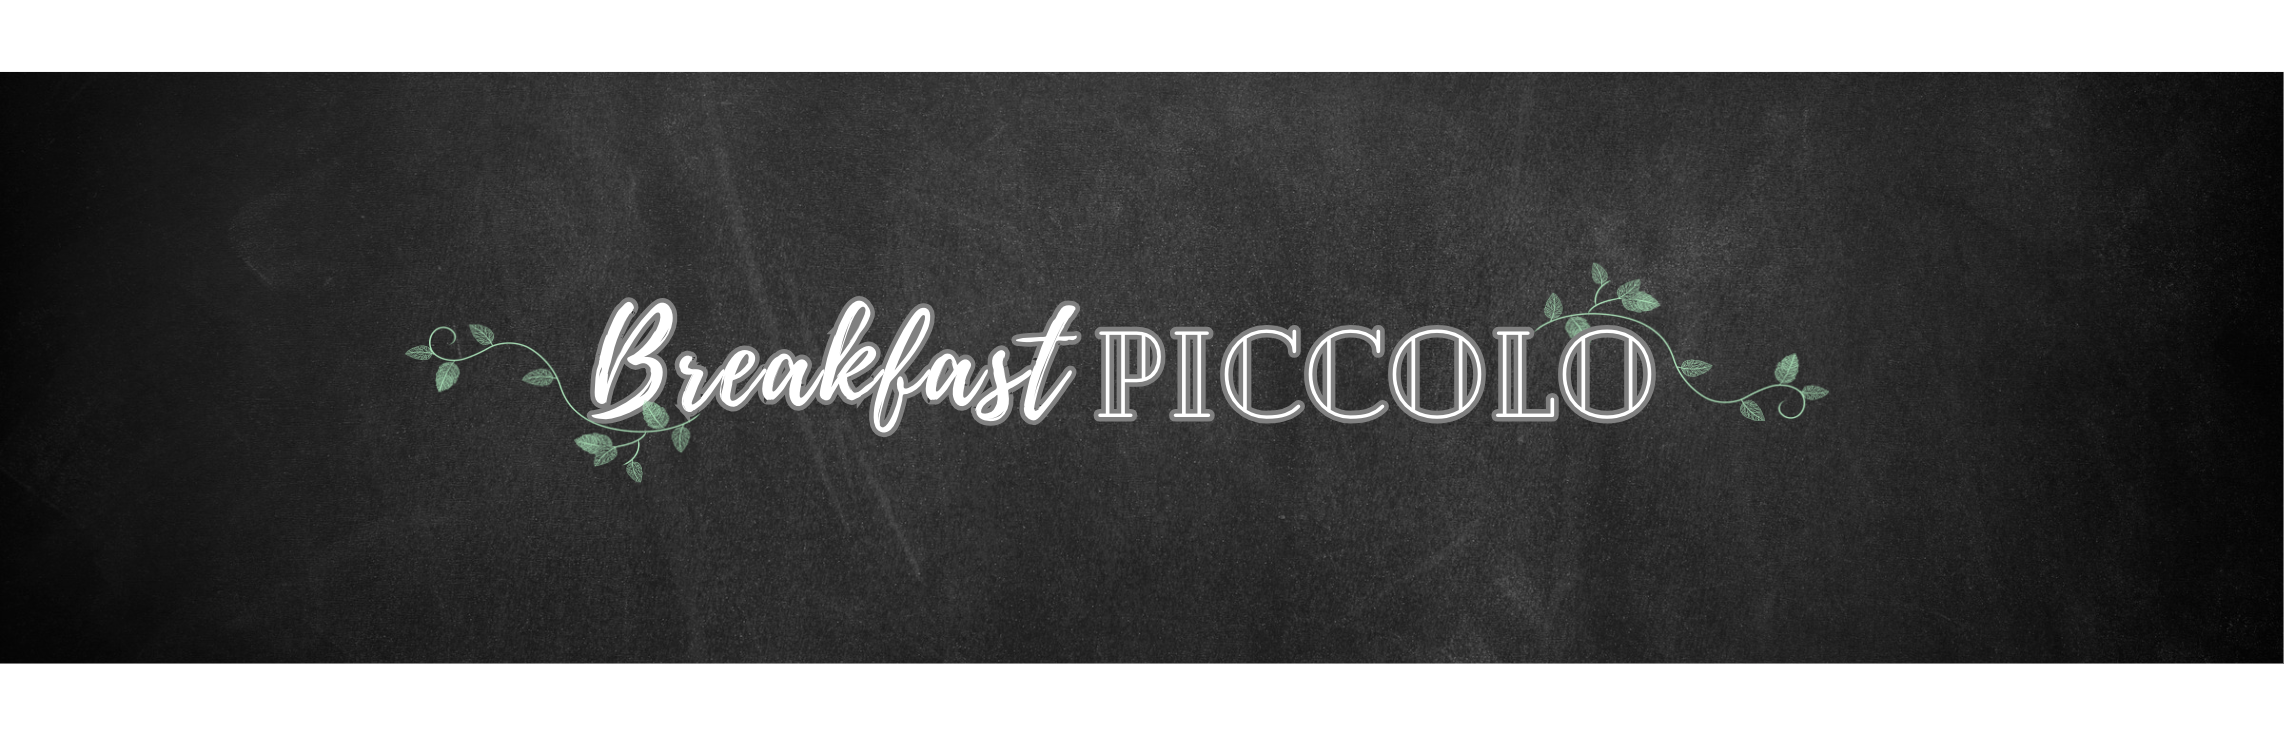 breakfast piccolo